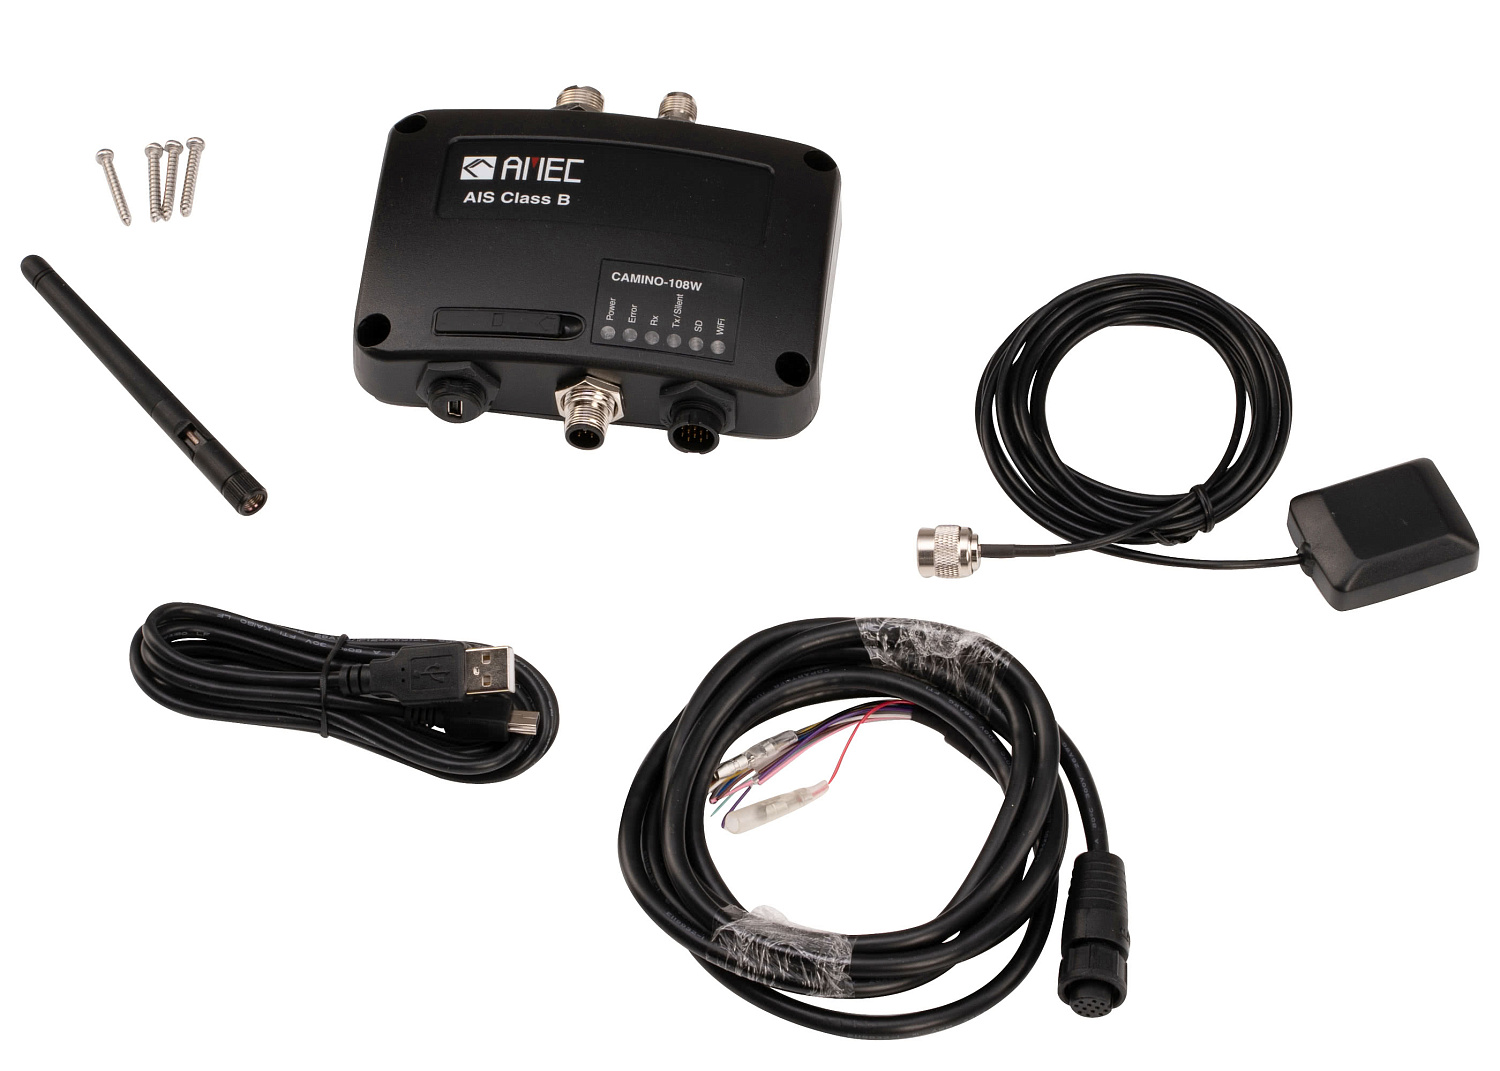 AMEC CAMINO-108W AIS Transponder with WiFi / GPS patch antenna